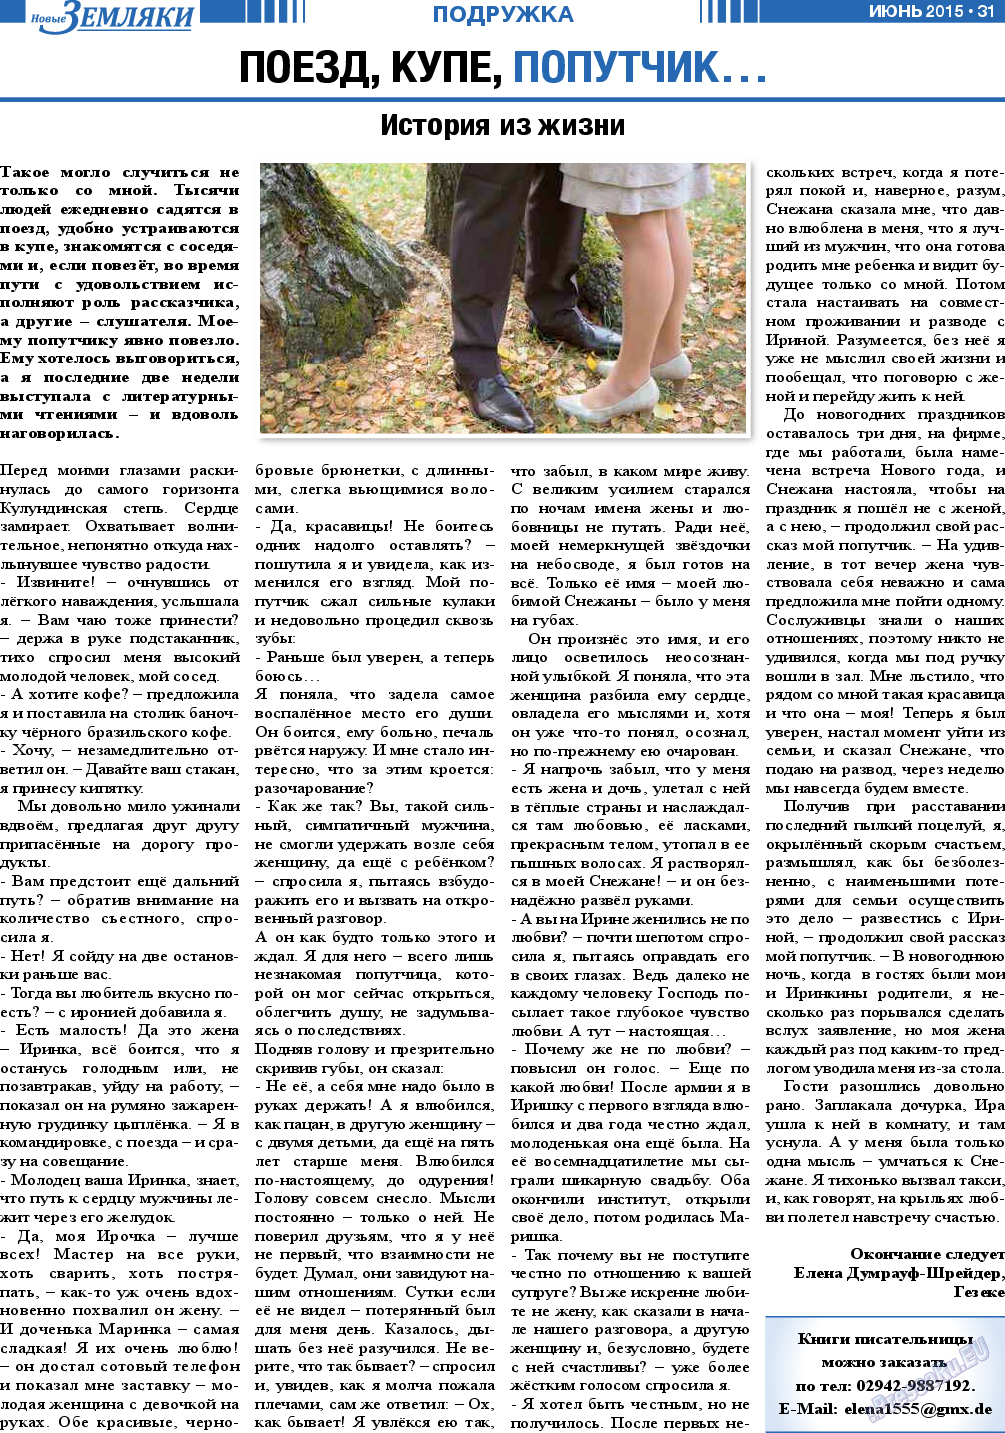 Новые Земляки, газета. 2015 №6 стр.31